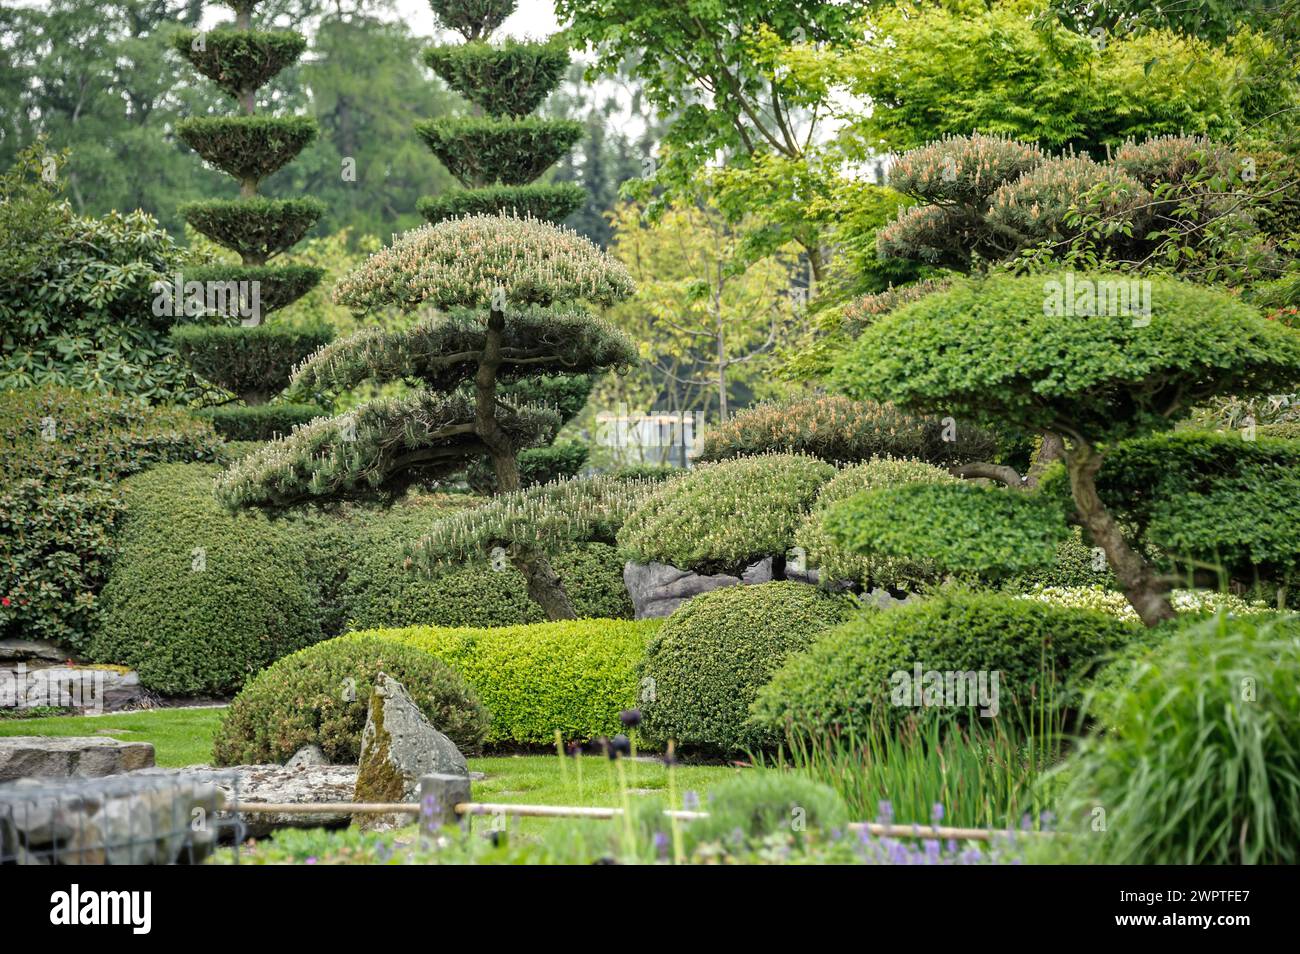 Japanese garden, krummholz pine (Pinus mugo), Park der Gaerten, Bad Zwischenahn, Lower Saxony, Germany Stock Photo